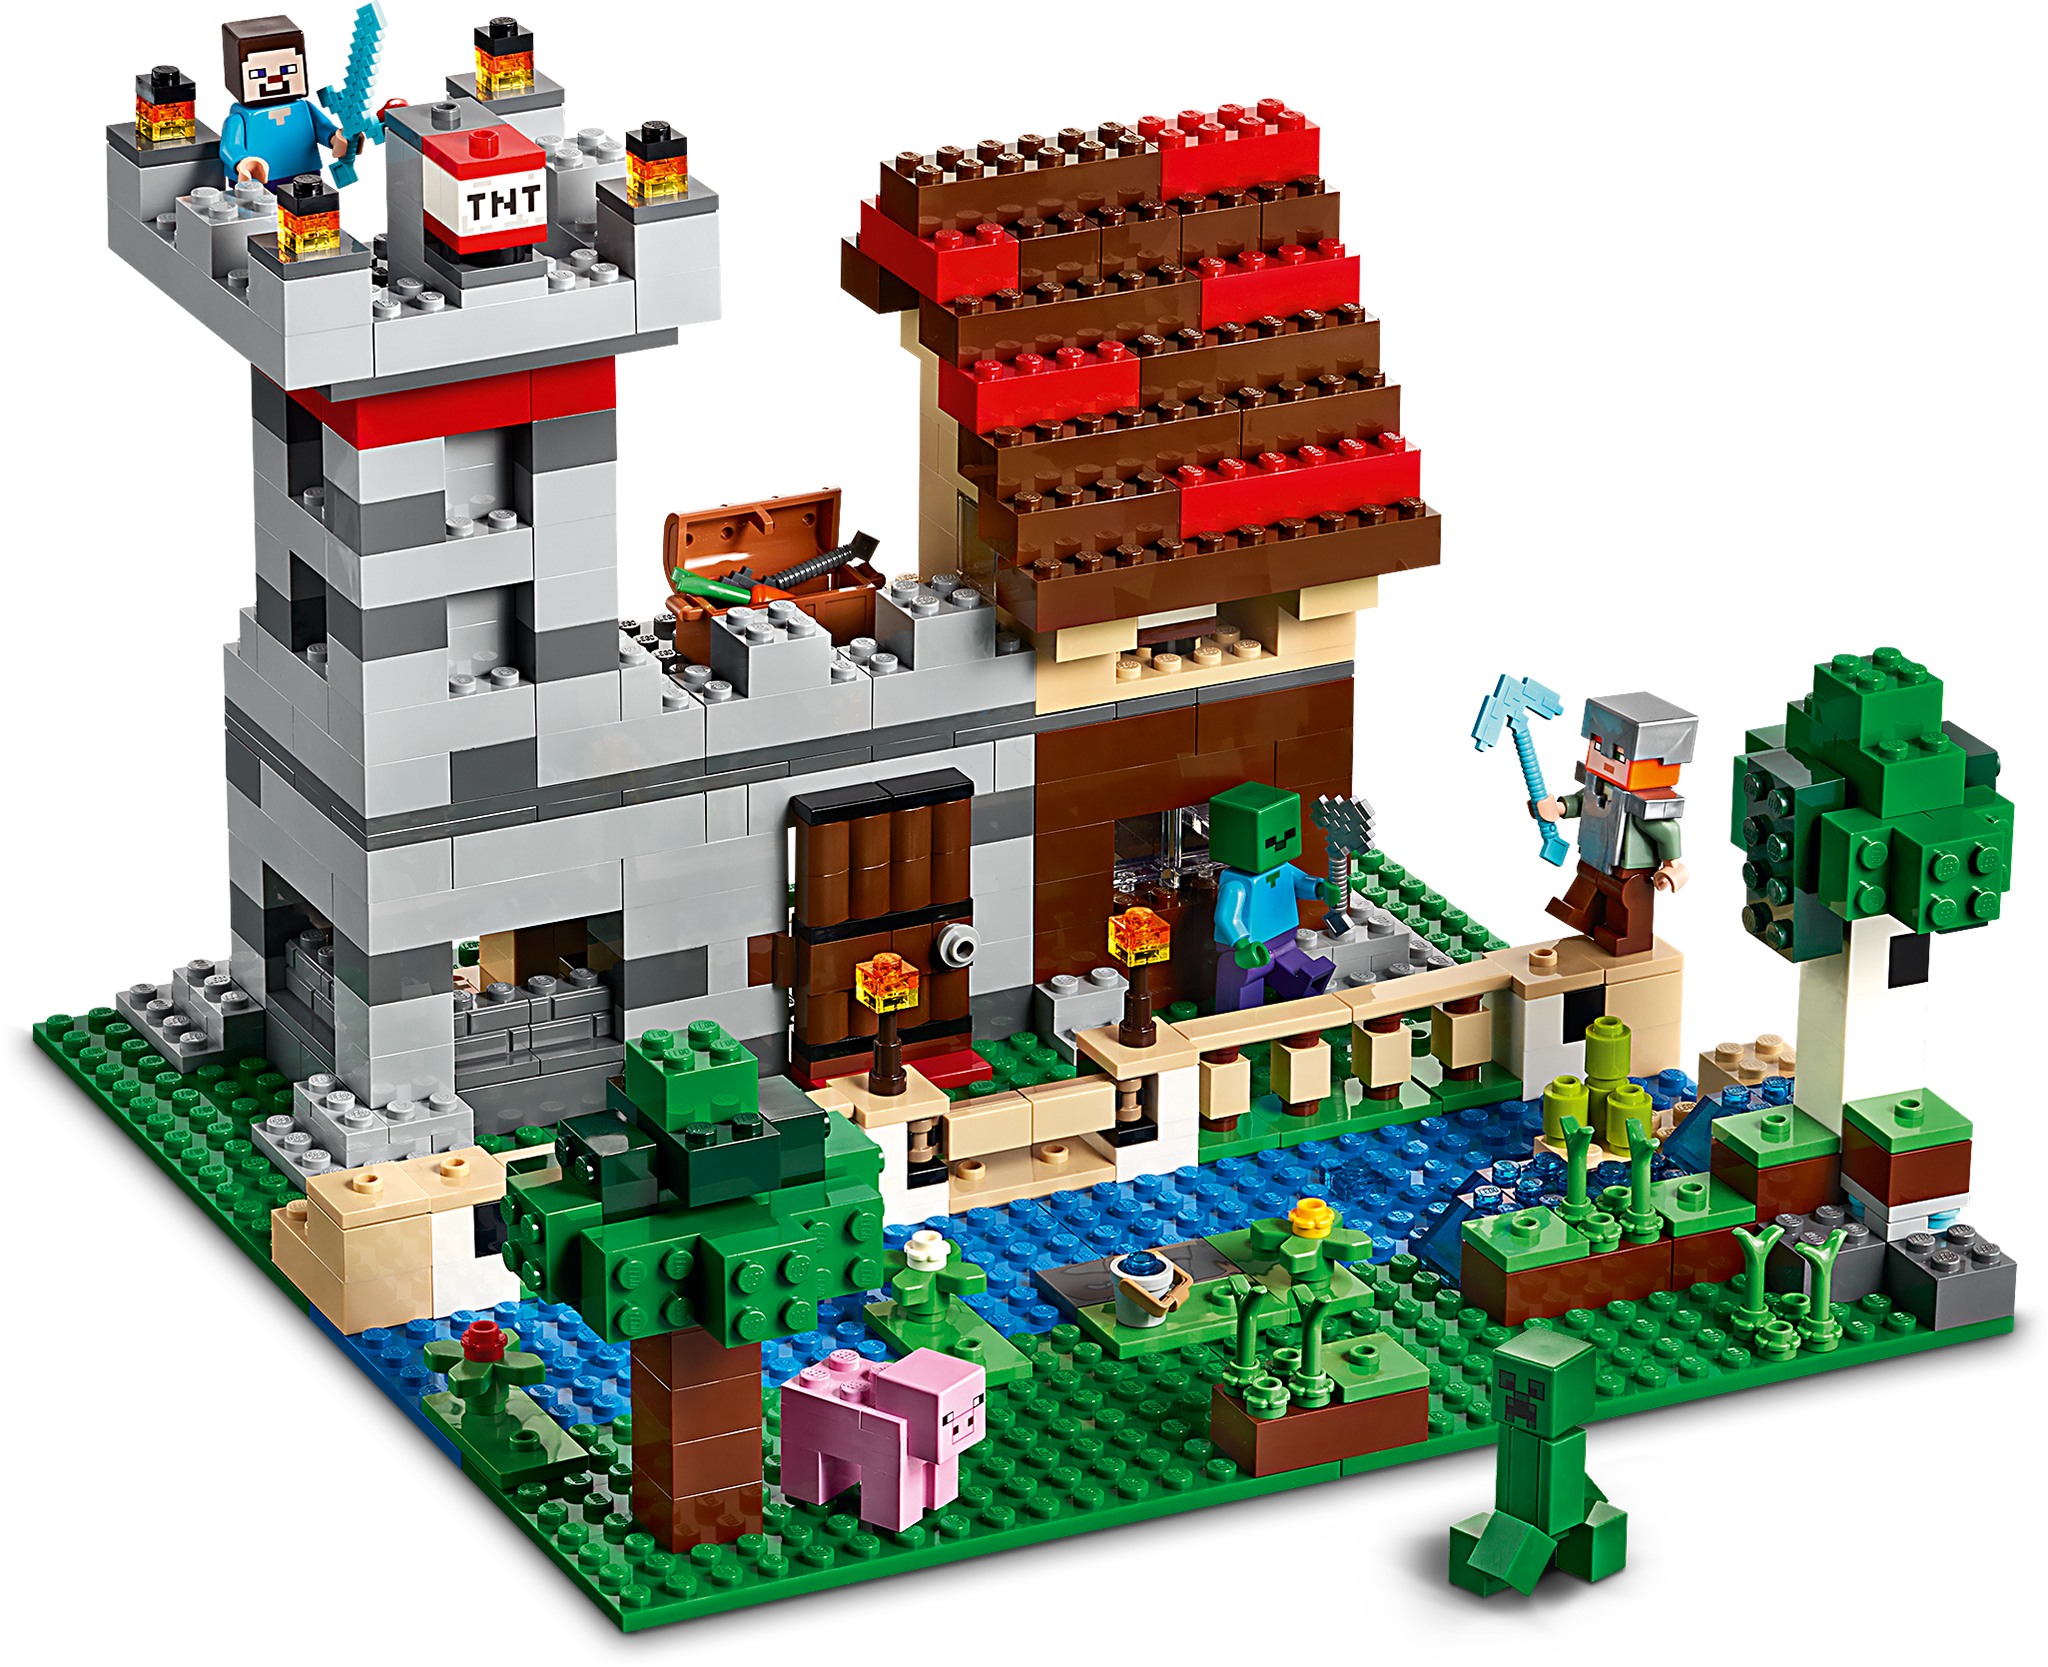 La boîte de construction 3.0 21161 | Minecraft® | Boutique LEGO® officielle  FR